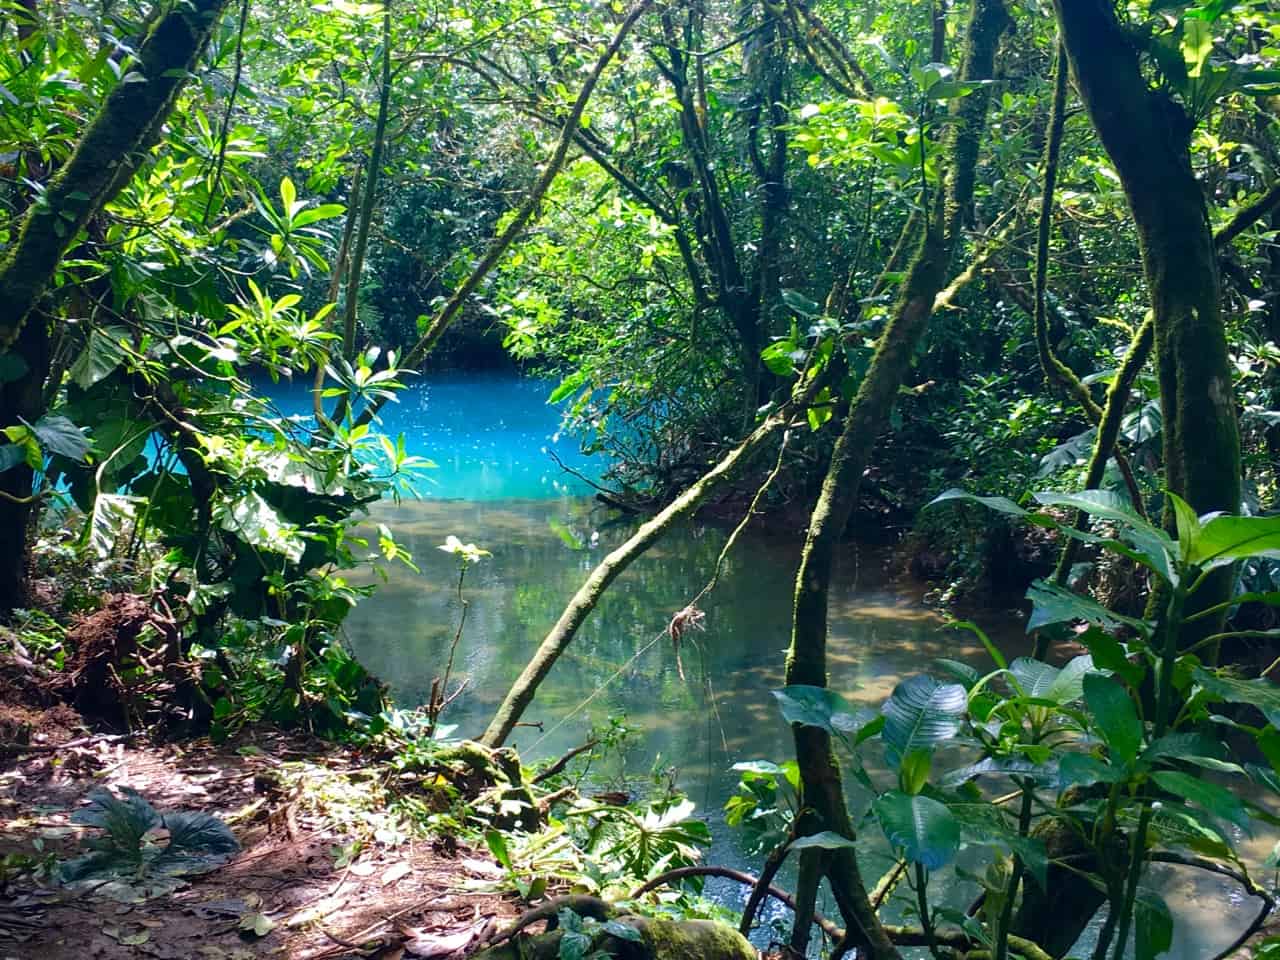 Los Teñidores na Costa Rica, onde dois rios de água limpa se encontram e um fica azul.